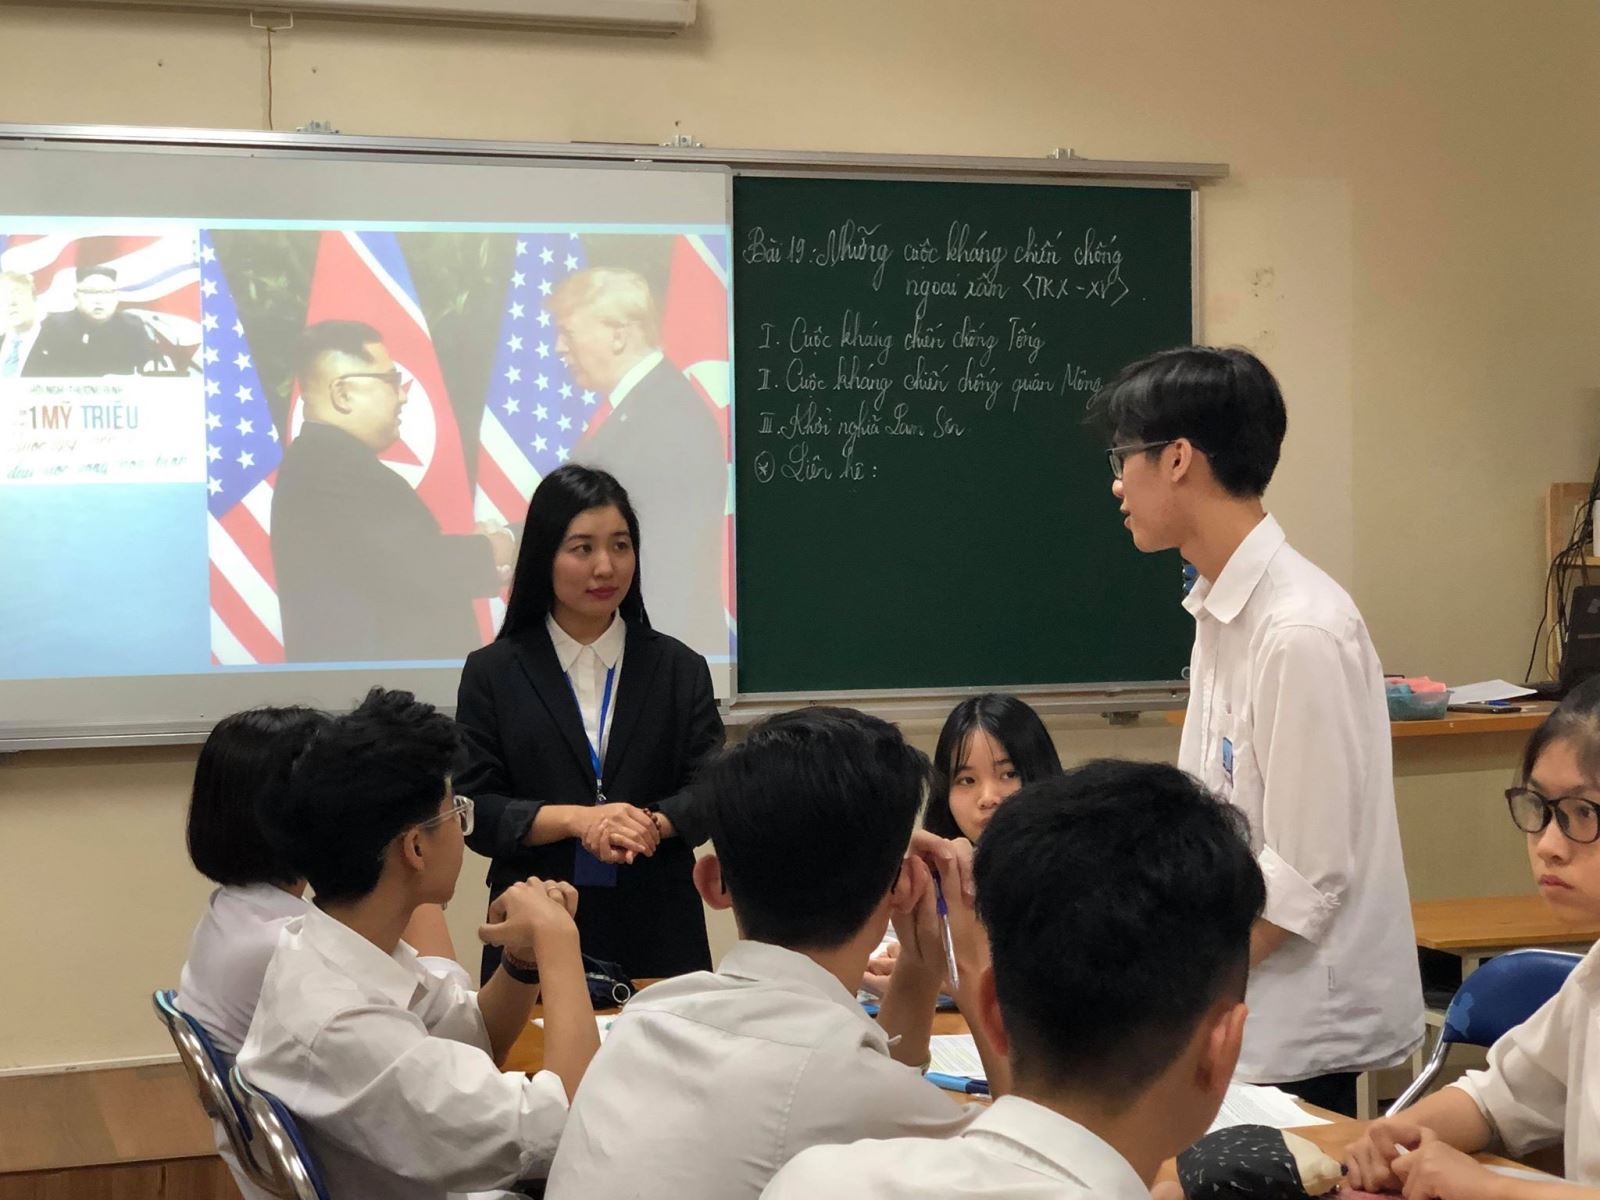 Hội nghị thượng đỉnh Mỹ - Triều tại Hà Nội trong suy nghĩ của học sinh